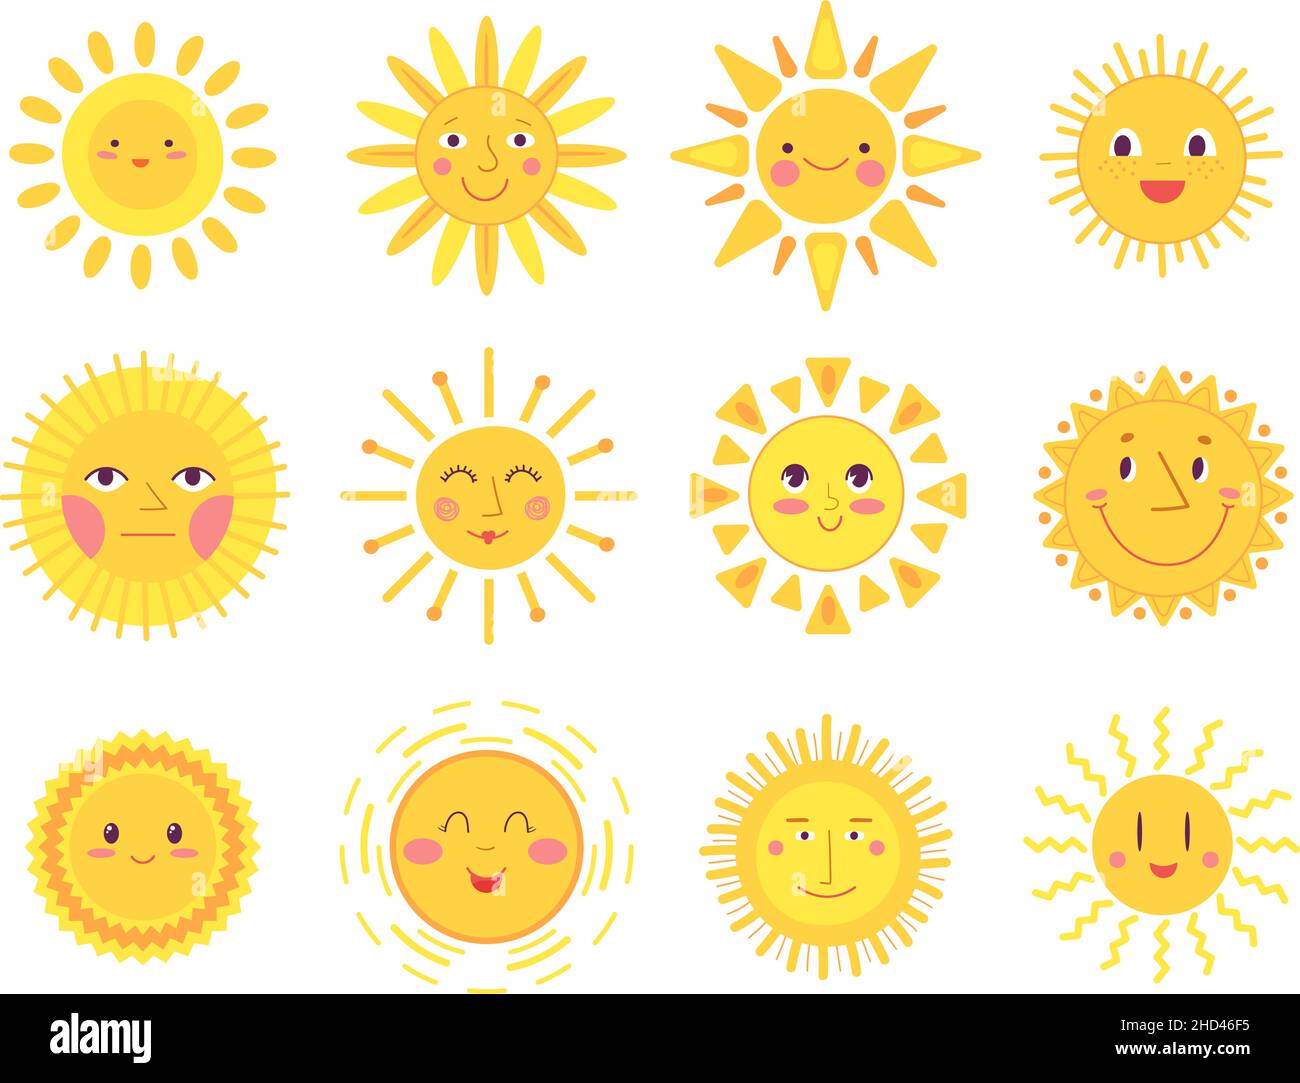 Niedliche Sonnengesichter. Glück Freude Sonnen, isoliert Baby Sonnenschein Elemente. Lustige lächelnde Morgen Symbole, skandinavischen Stil Sommer anständigen Vektor-Set Stock Vektor